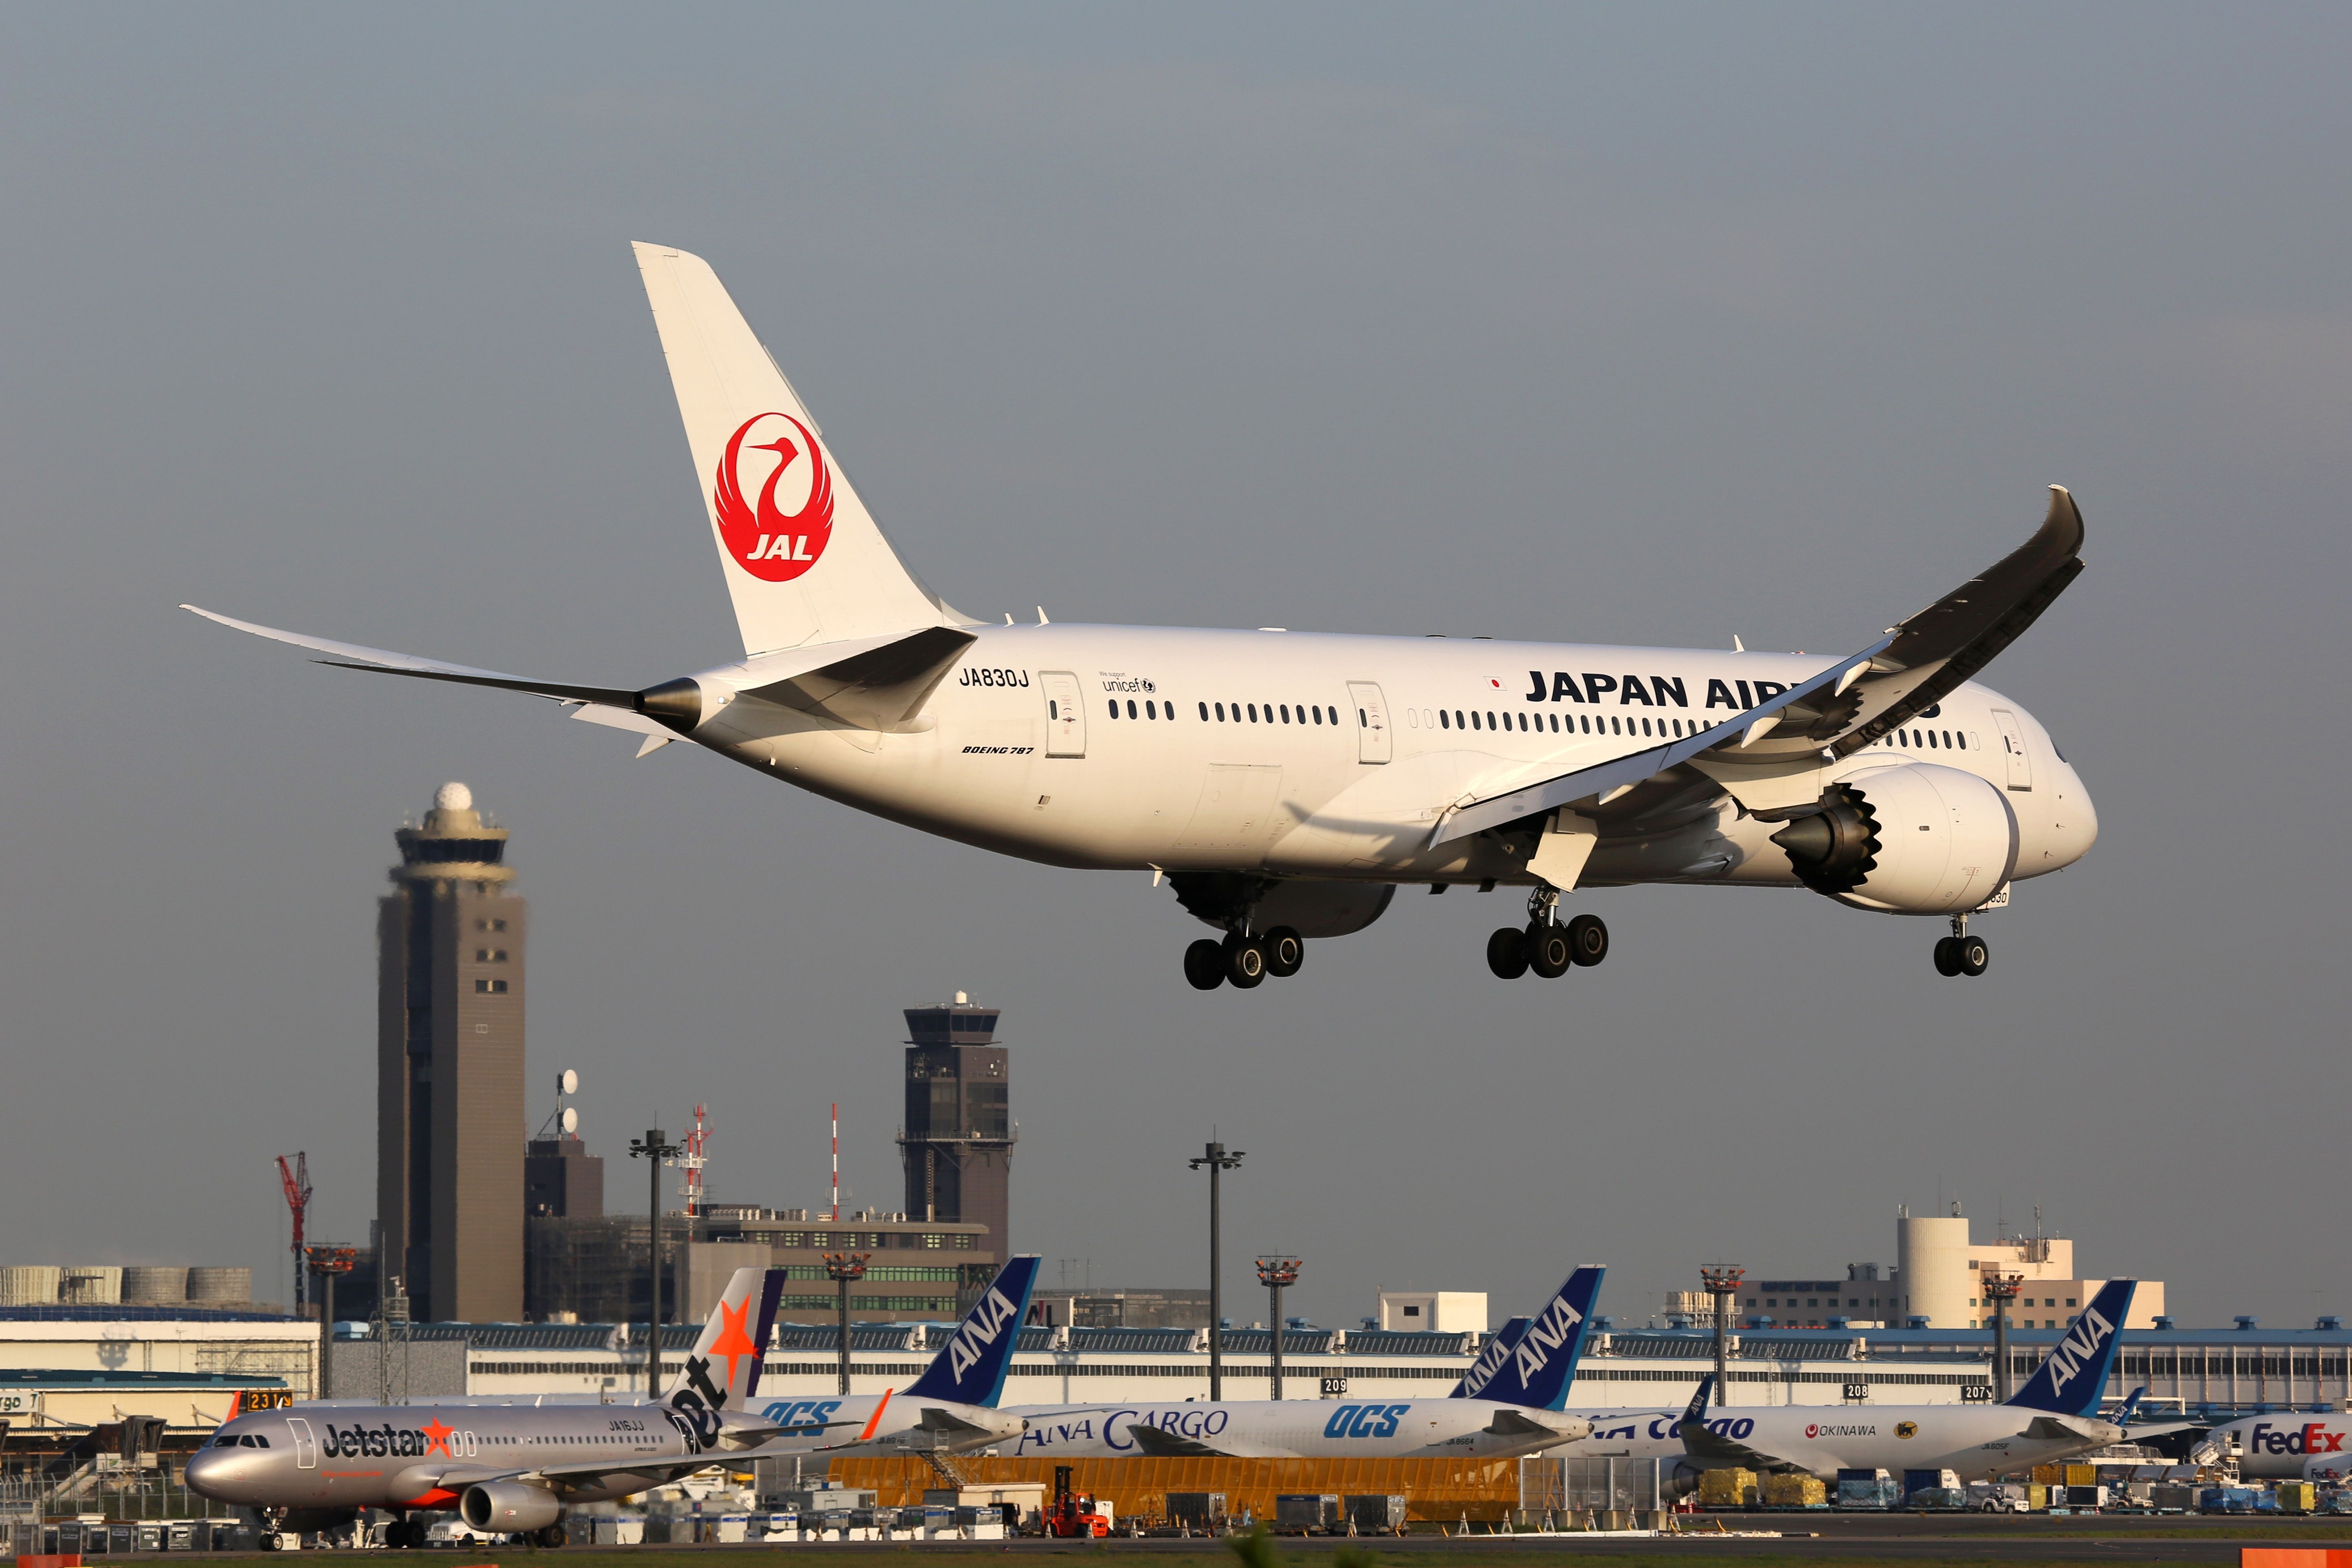 Japan Airlines Boeing 787 at Tokyo Narita Airport